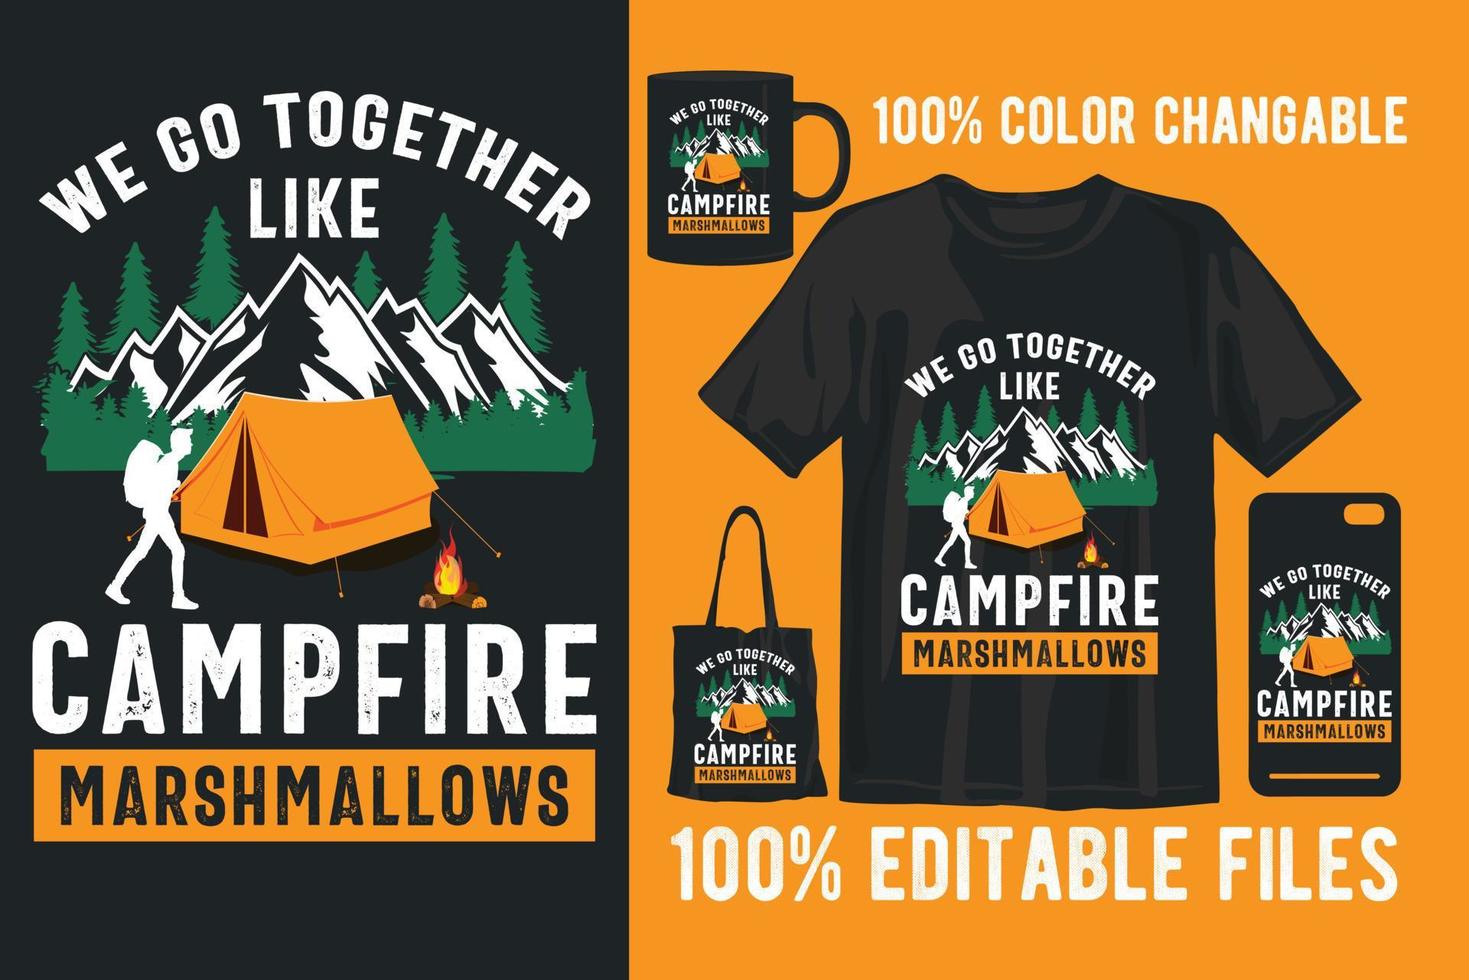 diseño de camiseta vintage retro de camping vector